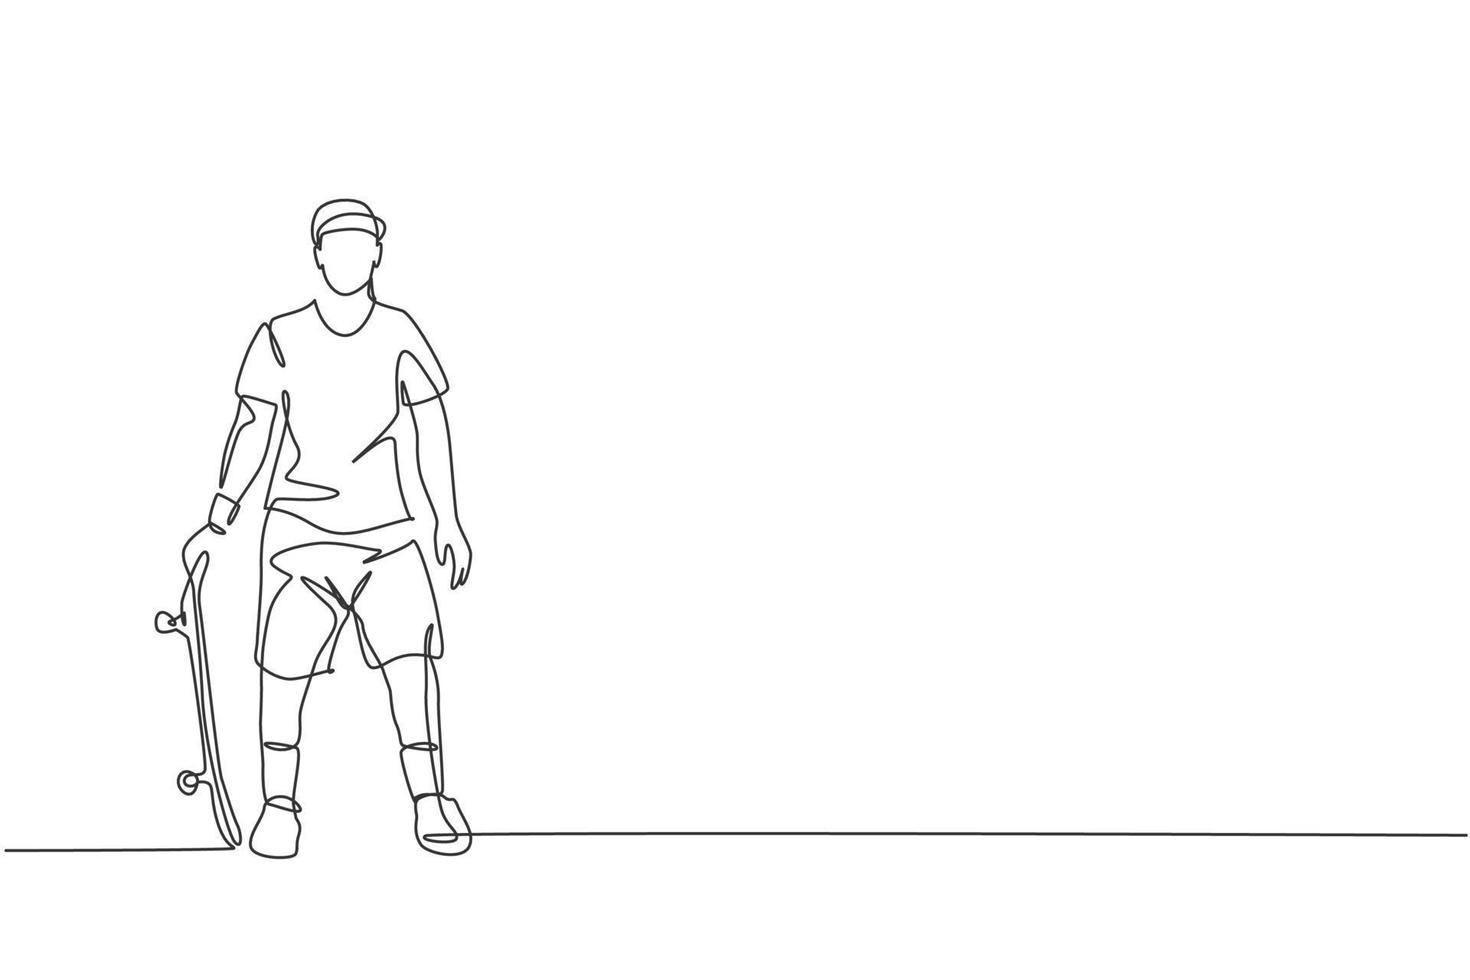 en kontinuerlig linjeteckning av ung cool skateboardåkare man håller skateboard och poserar snygg i skatepark. extrem tonåring sport koncept. dynamisk en rad rita grafisk design vektorillustration vektor